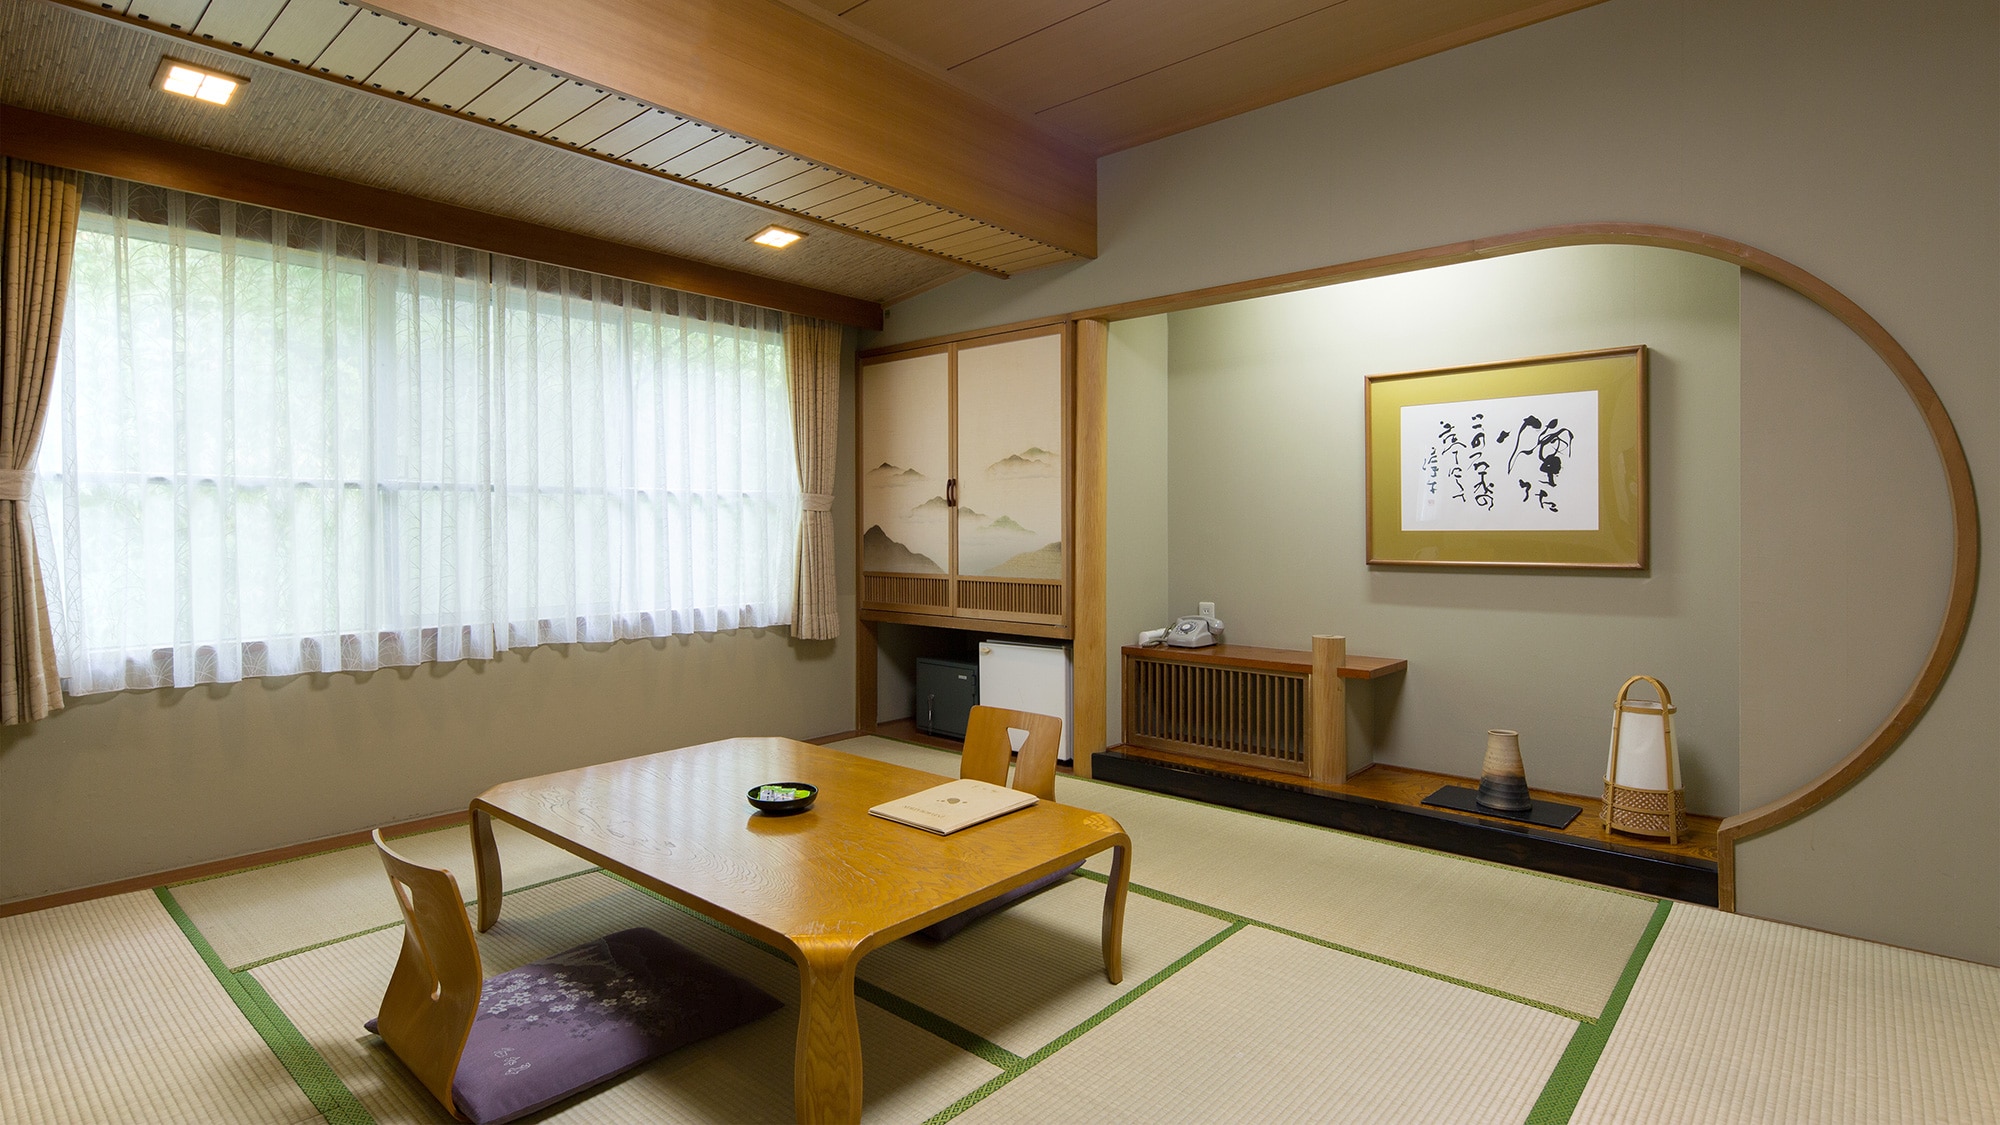 【日式房间】纯日式的日式房间。推荐给想用被褥休息的客人。